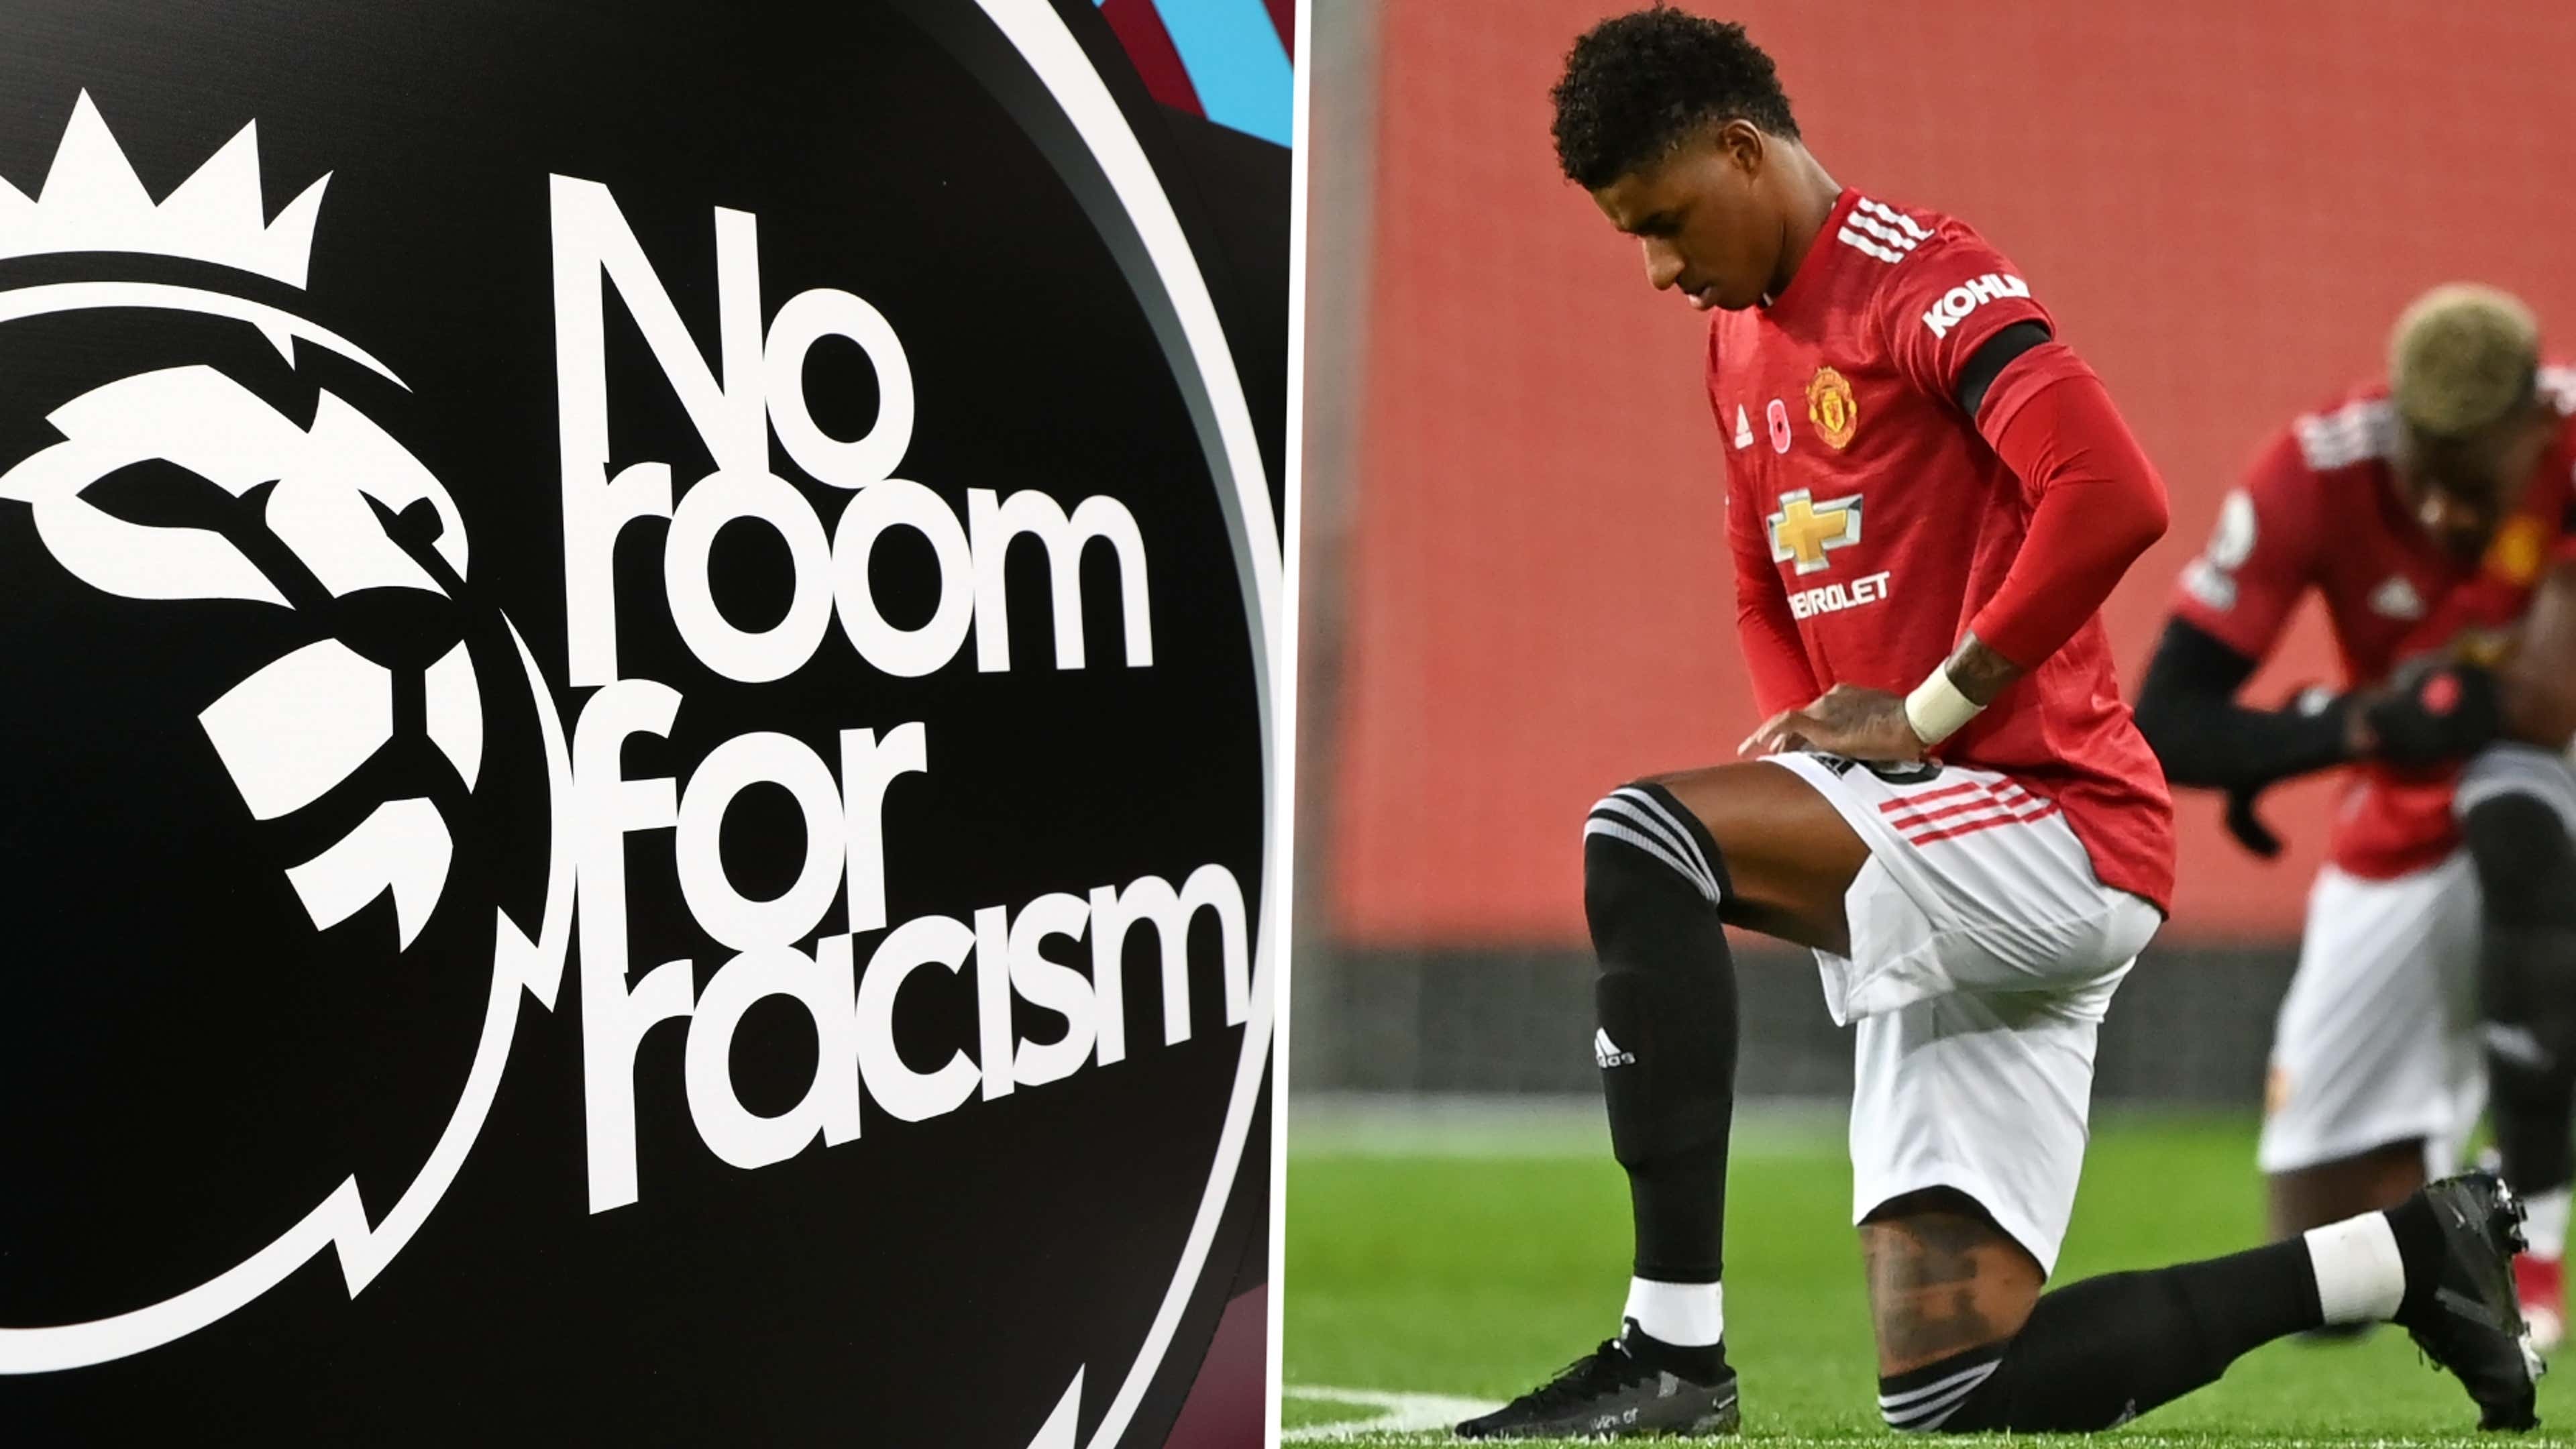 Racismo no futebol europeu: novos casos e pouca responsabilização, futebol  internacional